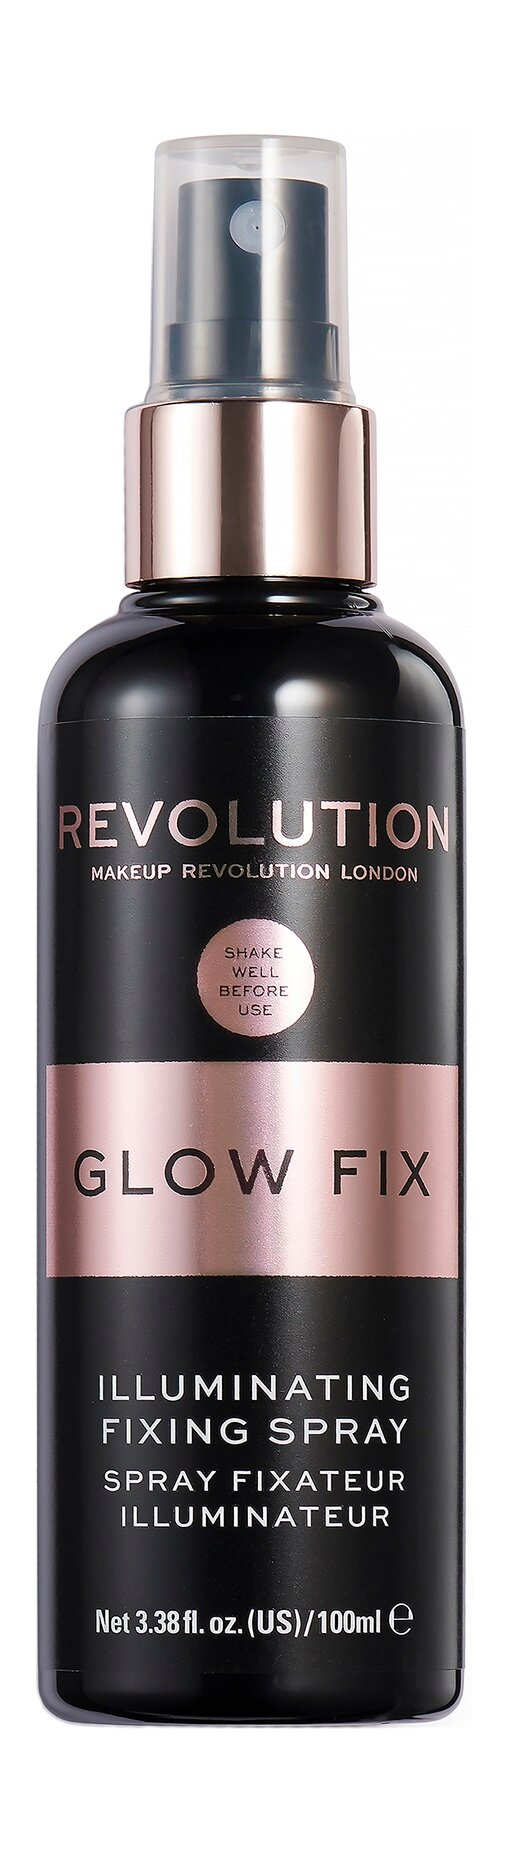 Спрей для фиксации макияжа со светоотражающими частицами Revolution Makeup Illuminating Fixing Spray /100 мл/гр.